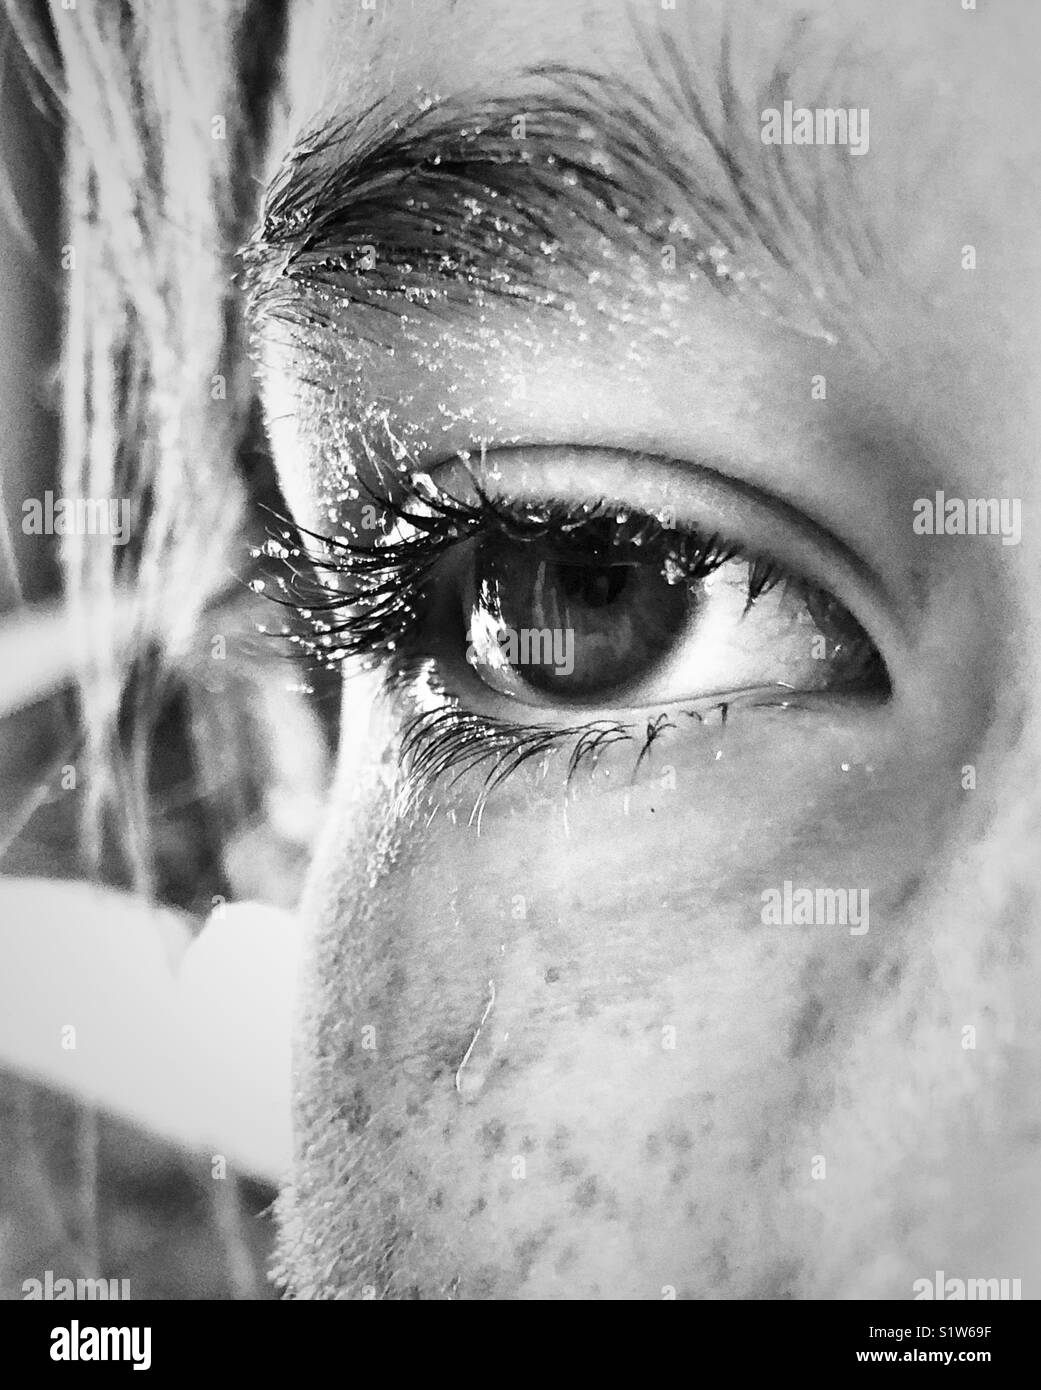 Primo piano della ragazza con gli occhi e la parziale viso coperto in goccioline di acqua che assomigliano a sudore o lacrime Foto Stock